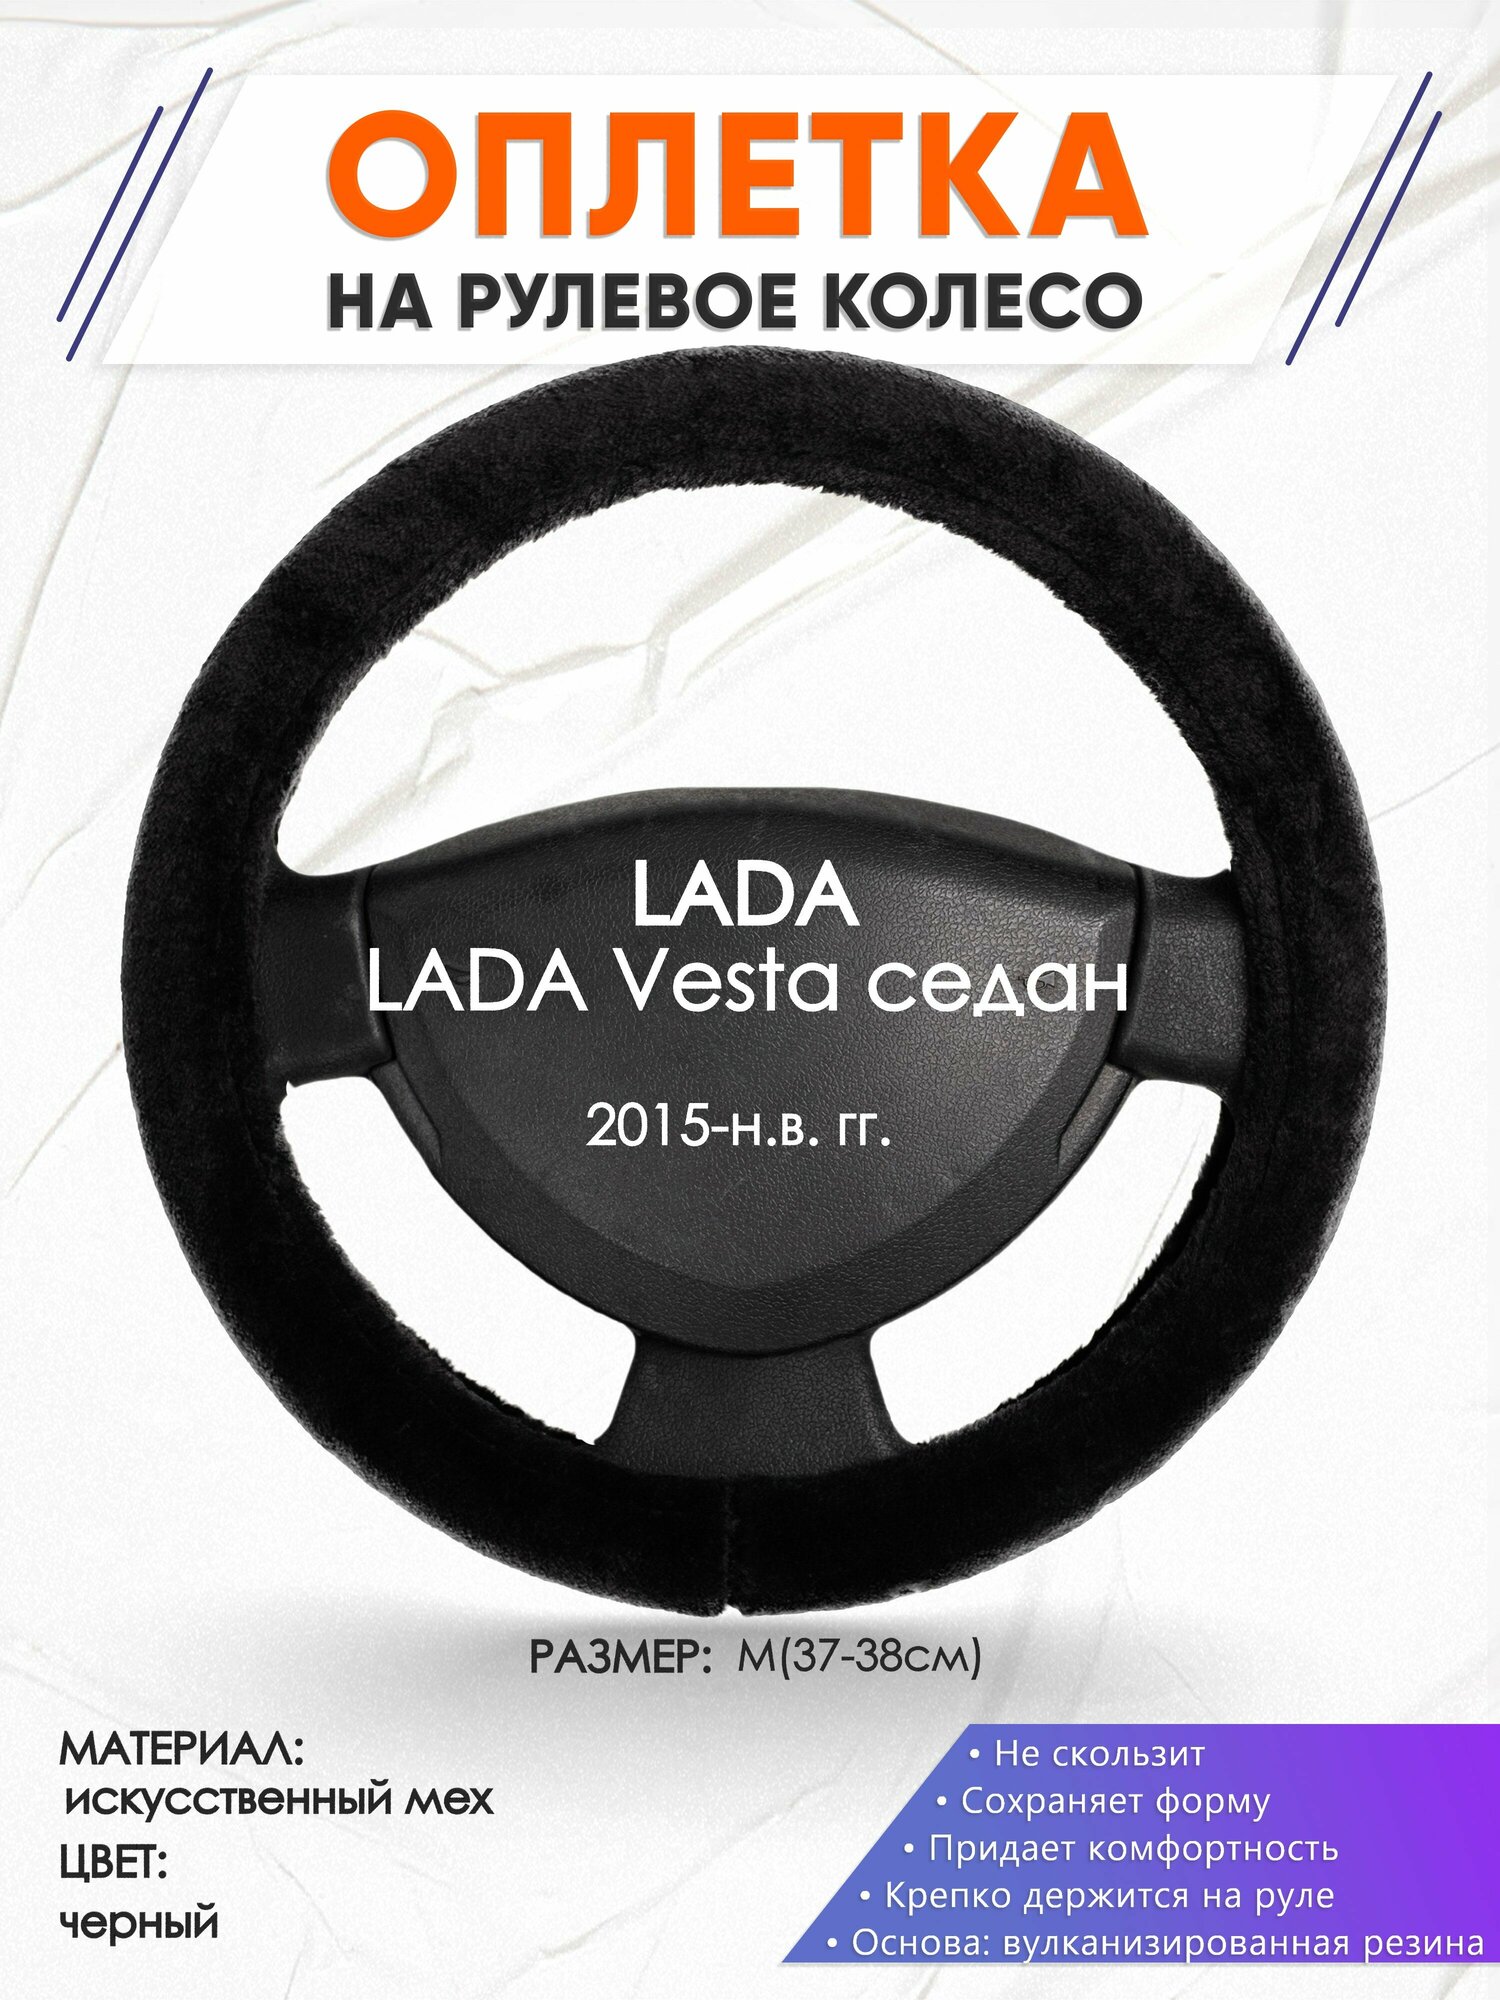 Оплетка наруль для LADA Vesta седан(Лада Веста) 2015-н. в. годов выпуска, размер M(37-38см), Искусственный мех 45